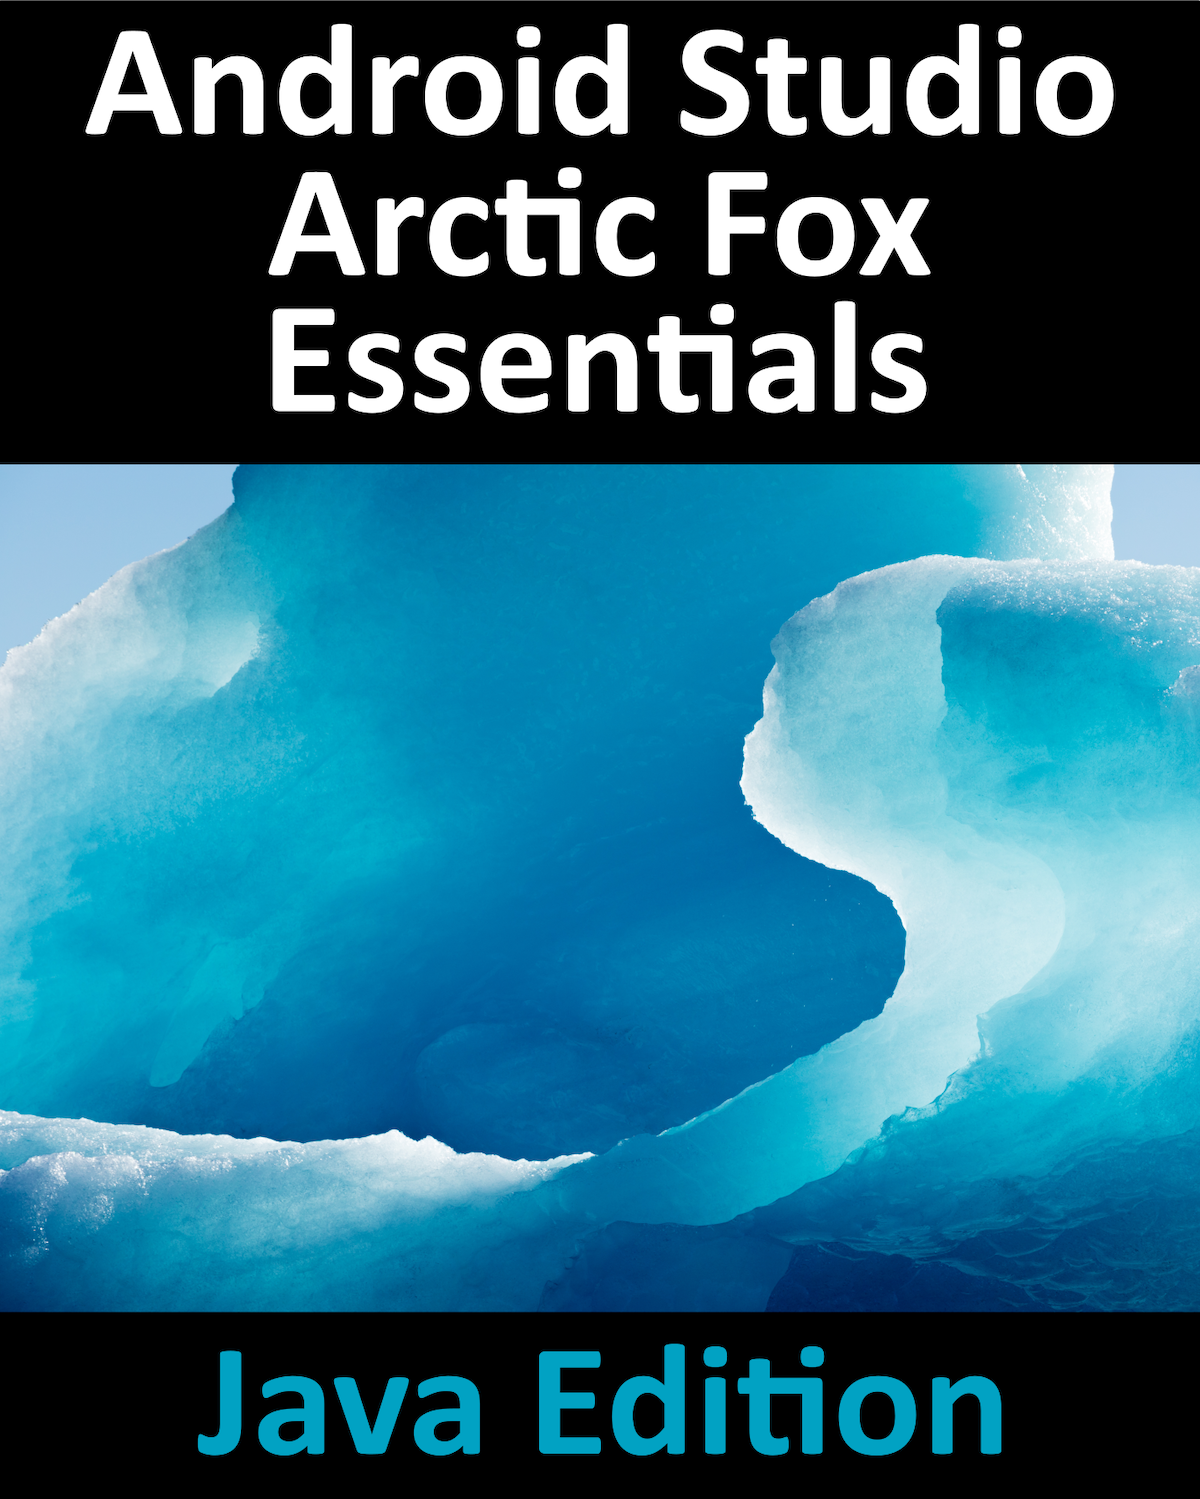 Android Studio Arctic Fox Essentials Java Edition Android Studio Arctic Fox - photo 1